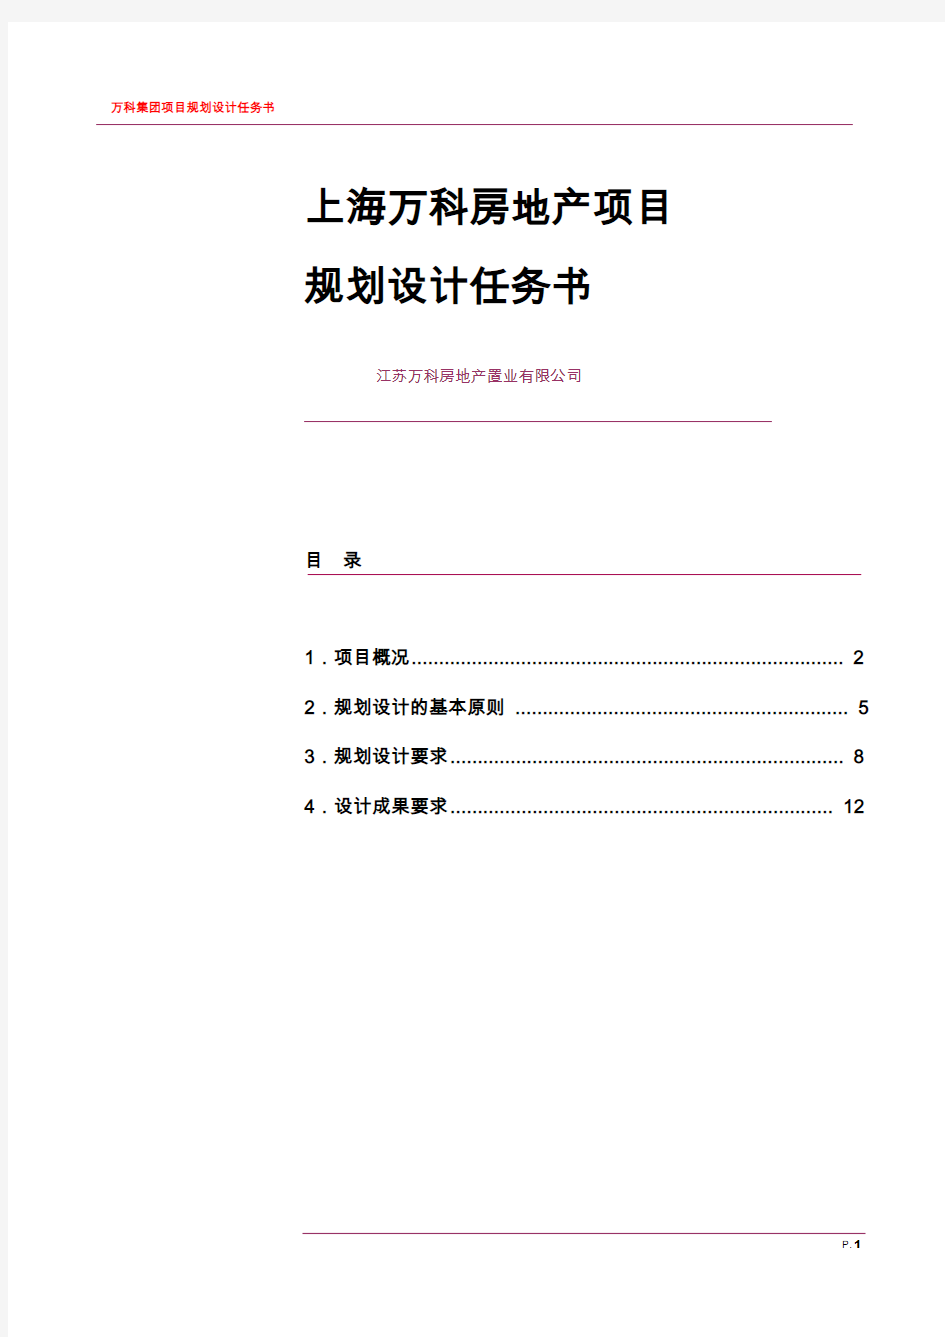 上海万科建筑规划设计任务书